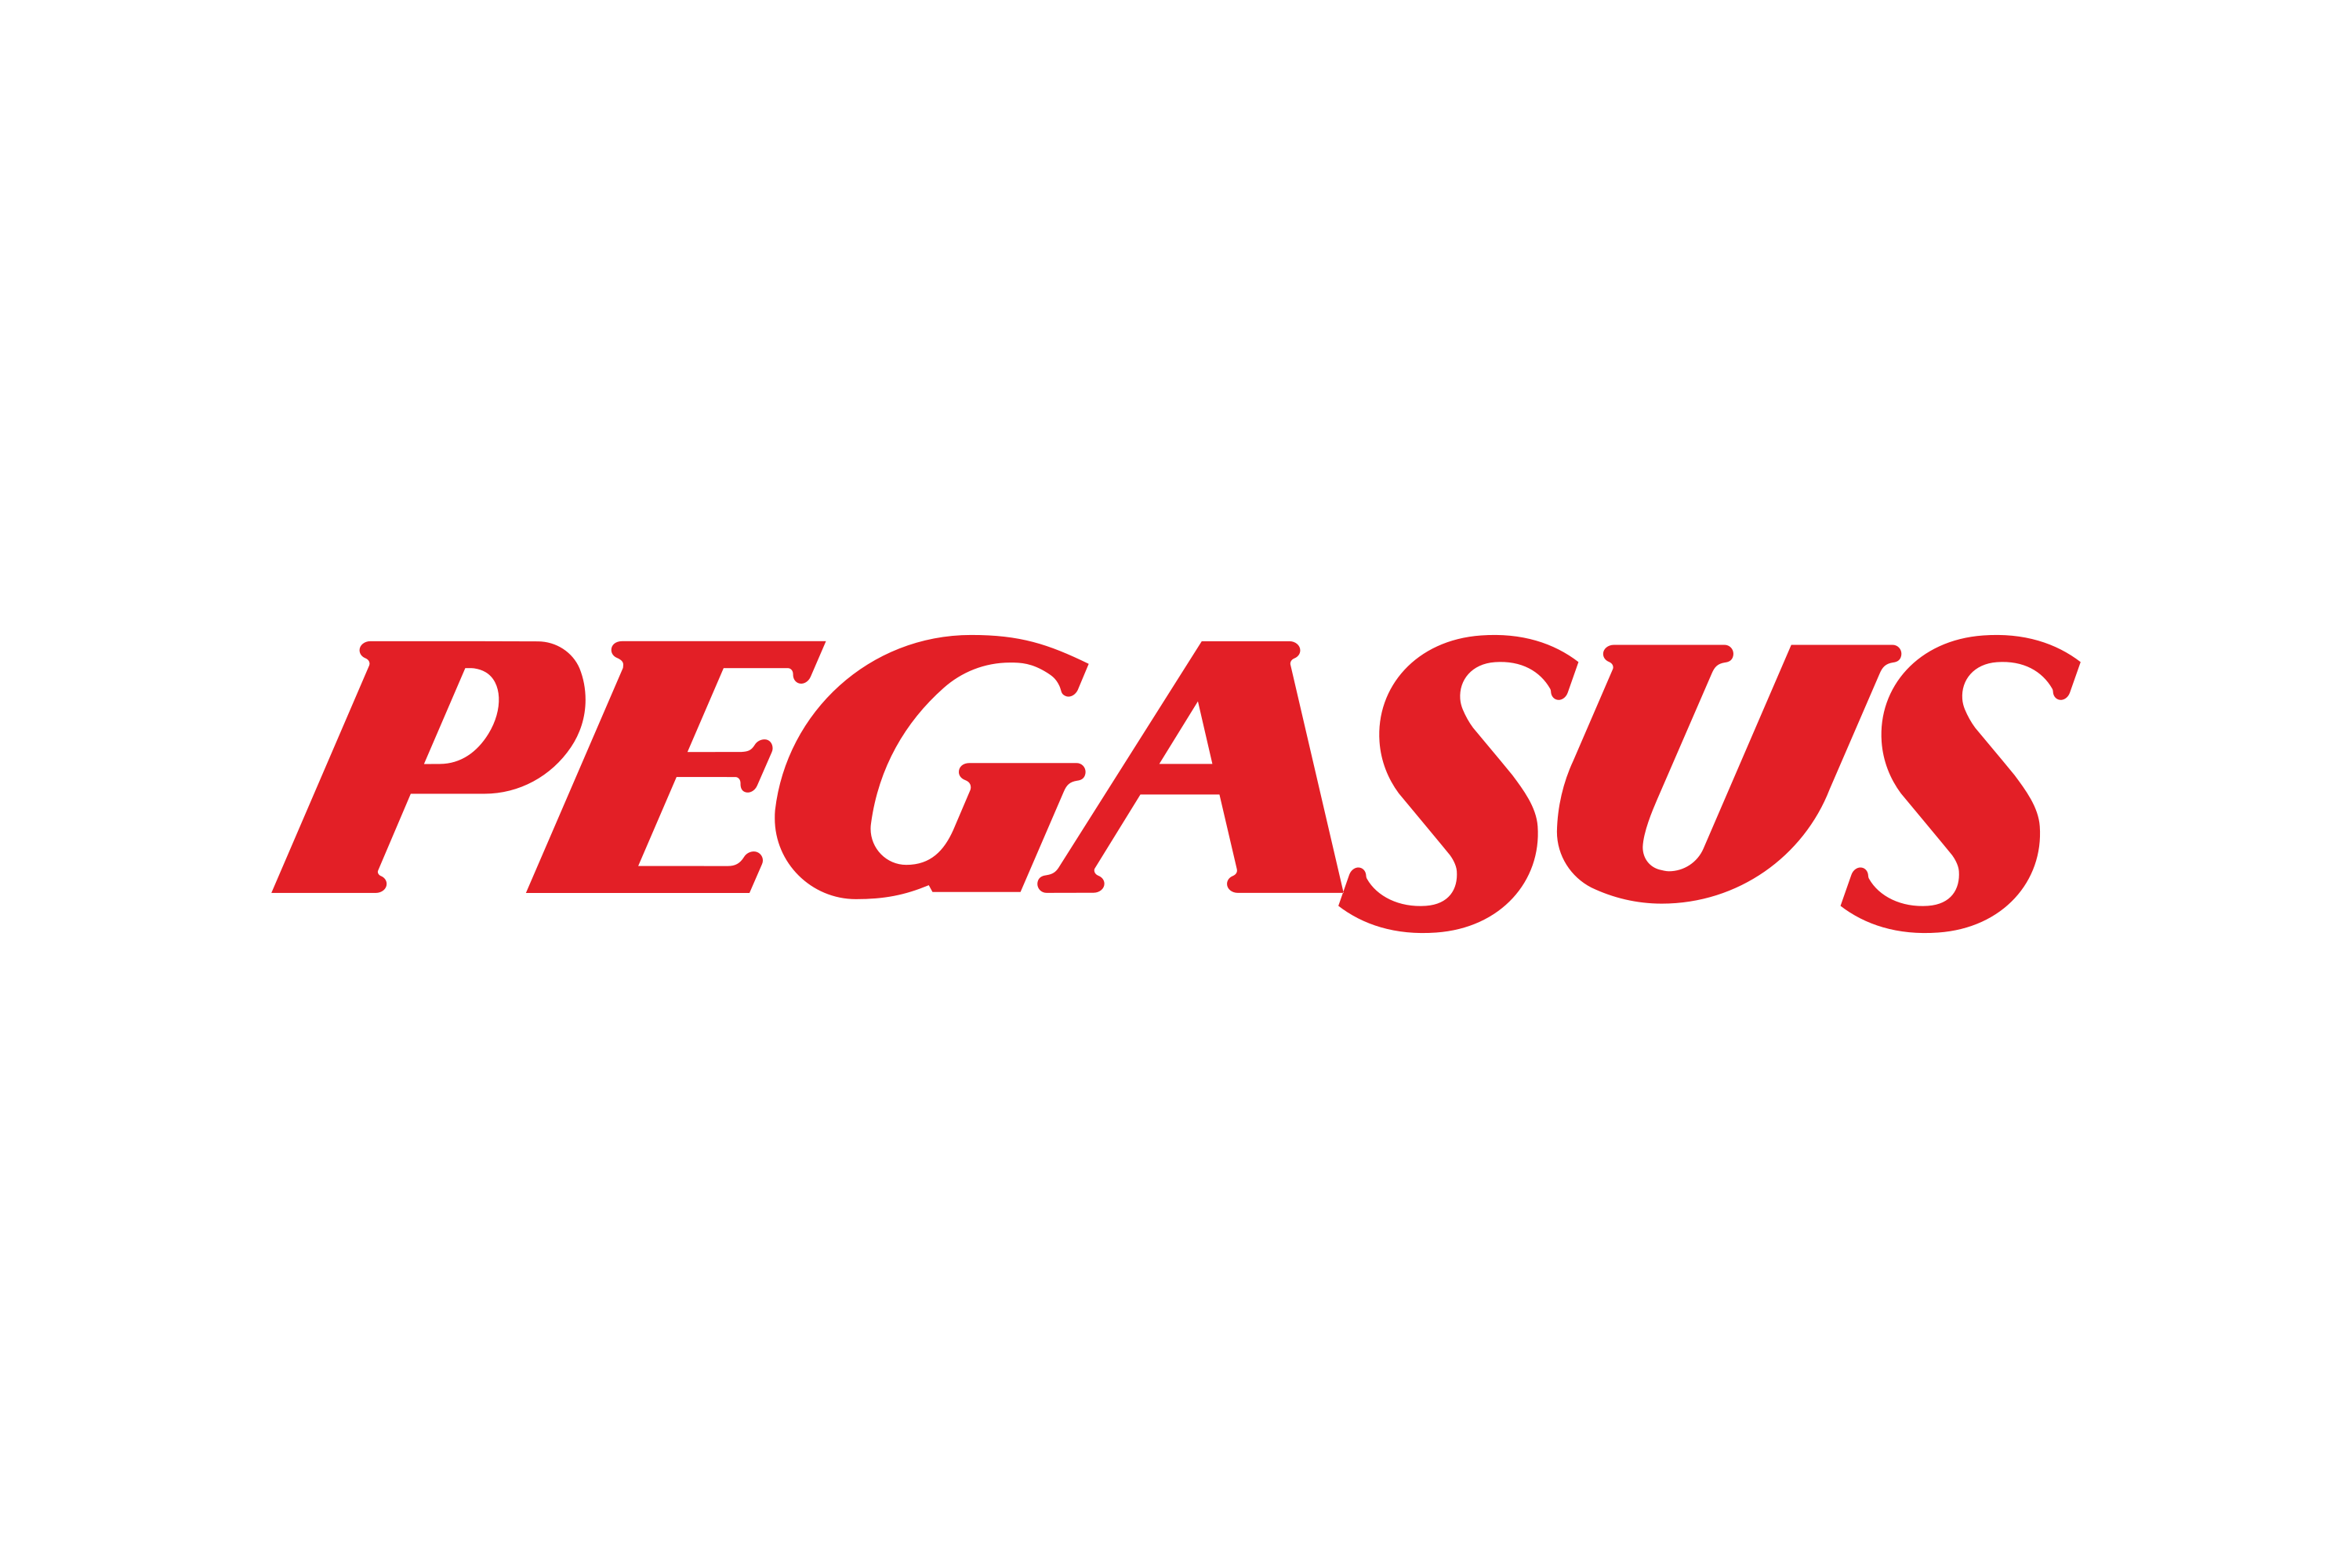 PGSUS - Pegasus